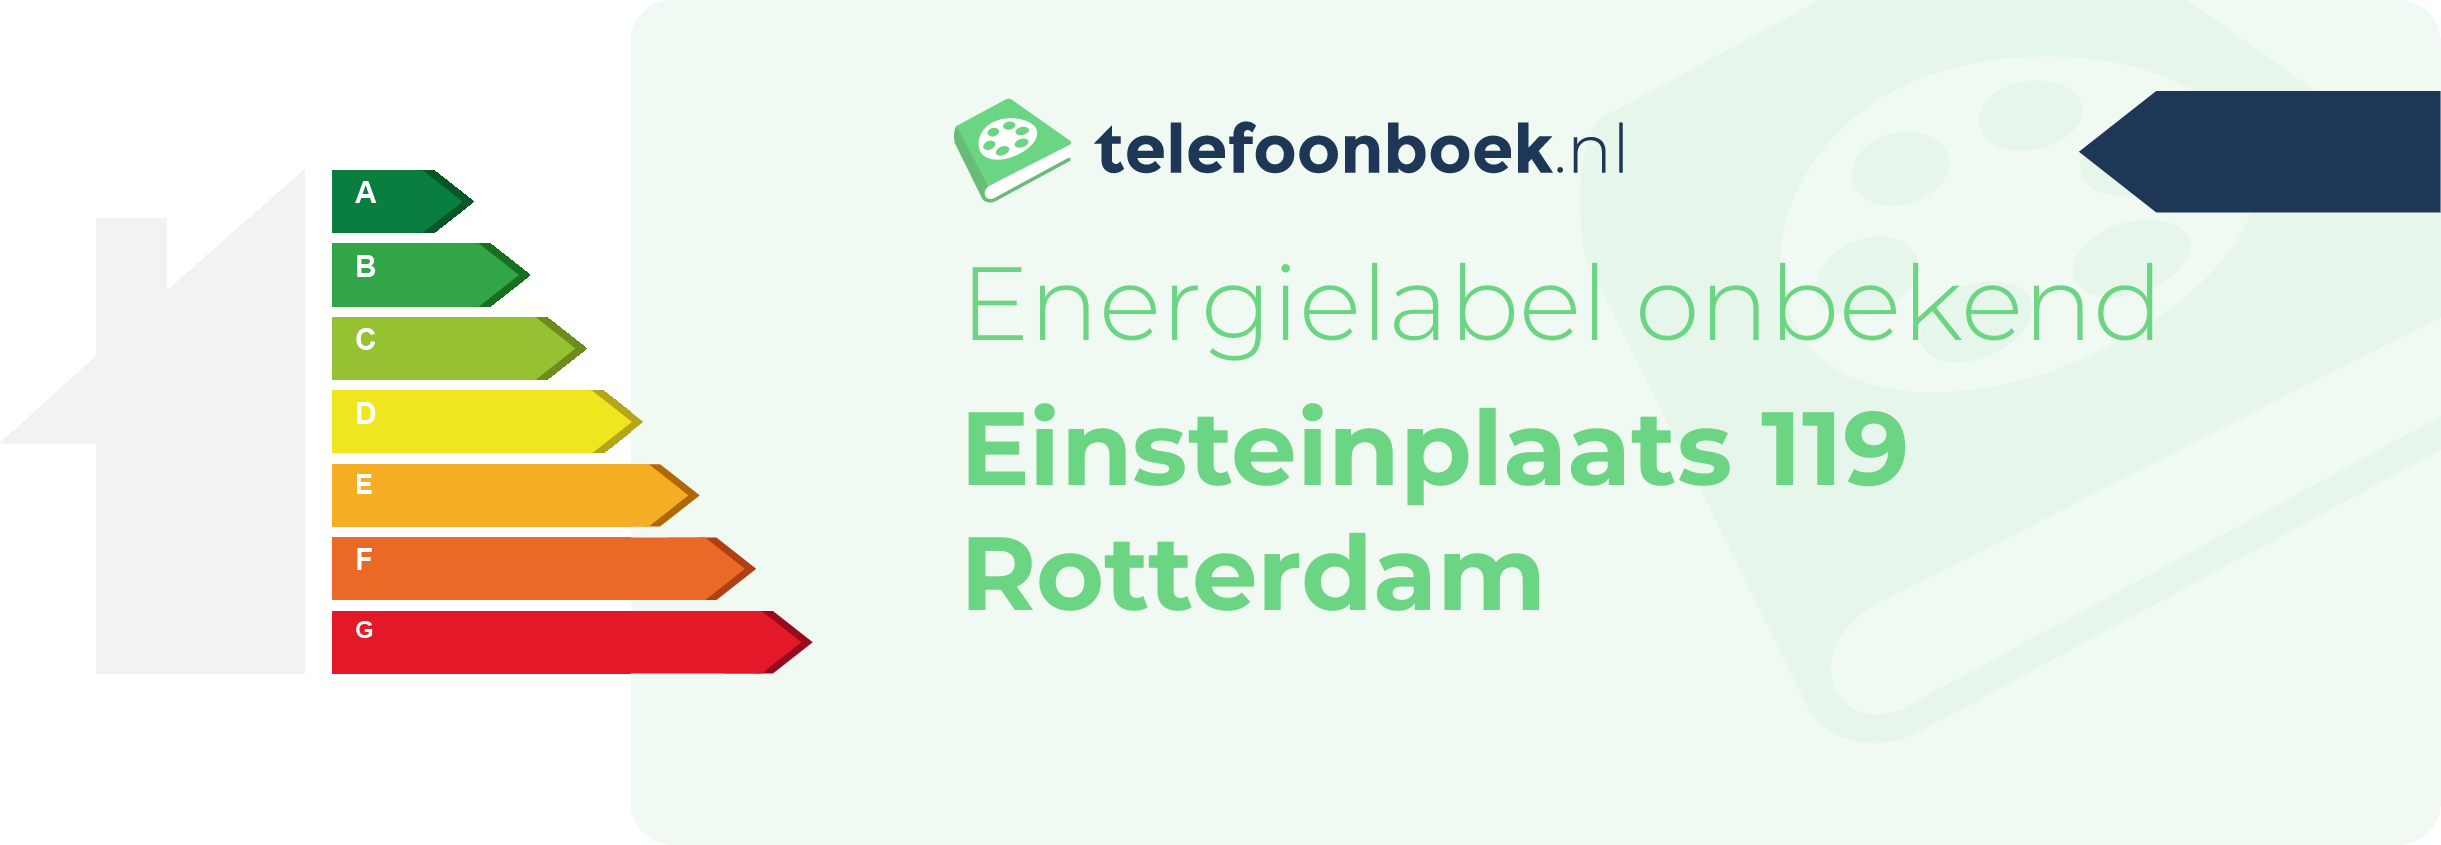 Energielabel Einsteinplaats 119 Rotterdam